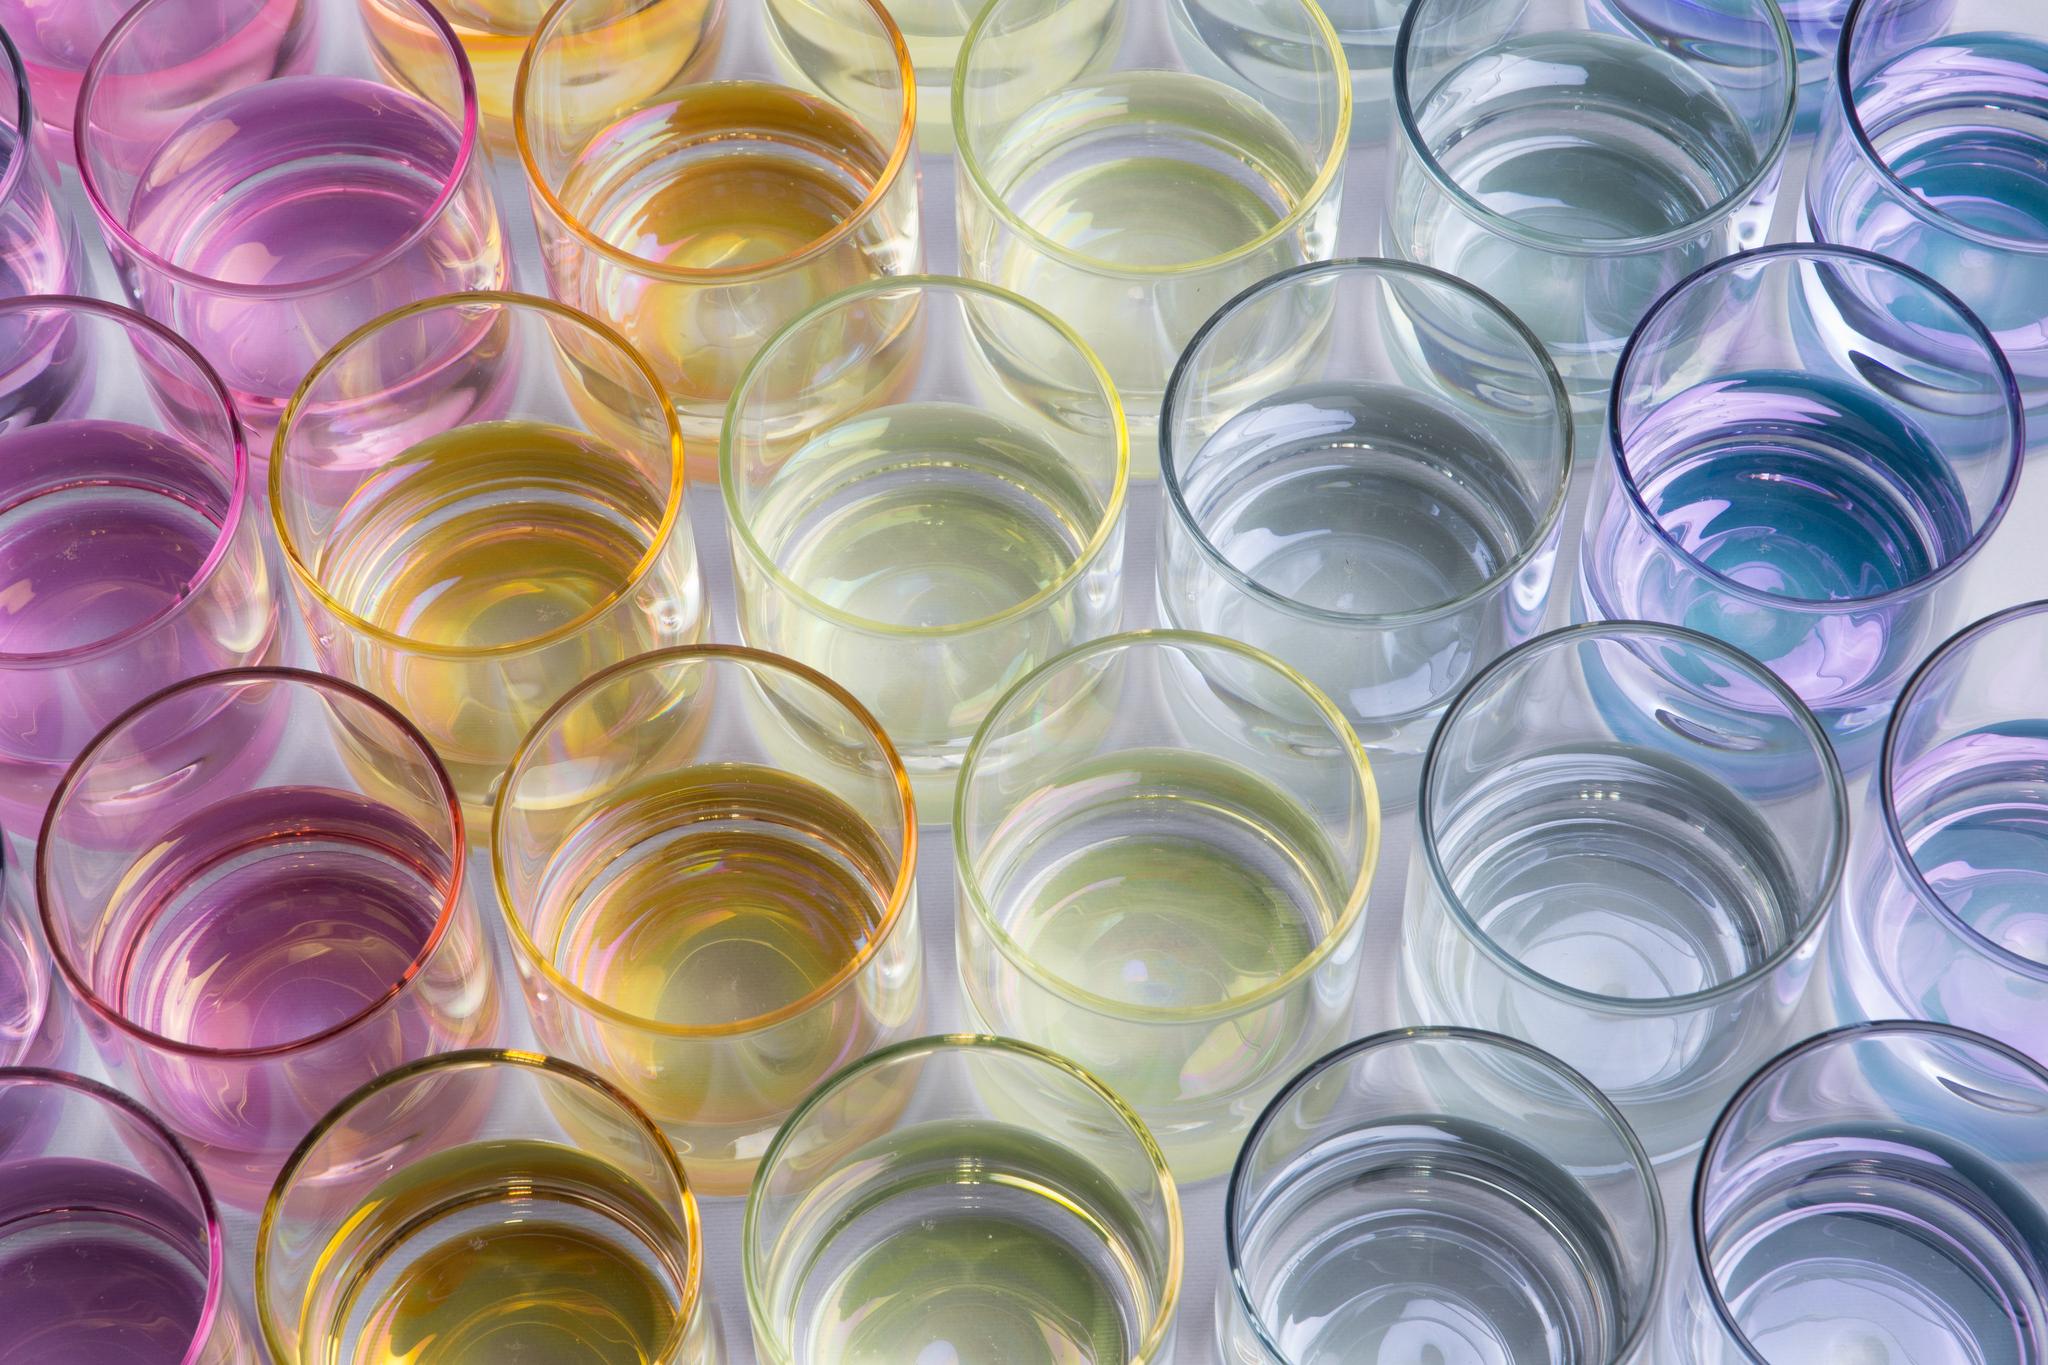 Farbenfrohe Glaswaren zum Mischen und Kombinieren